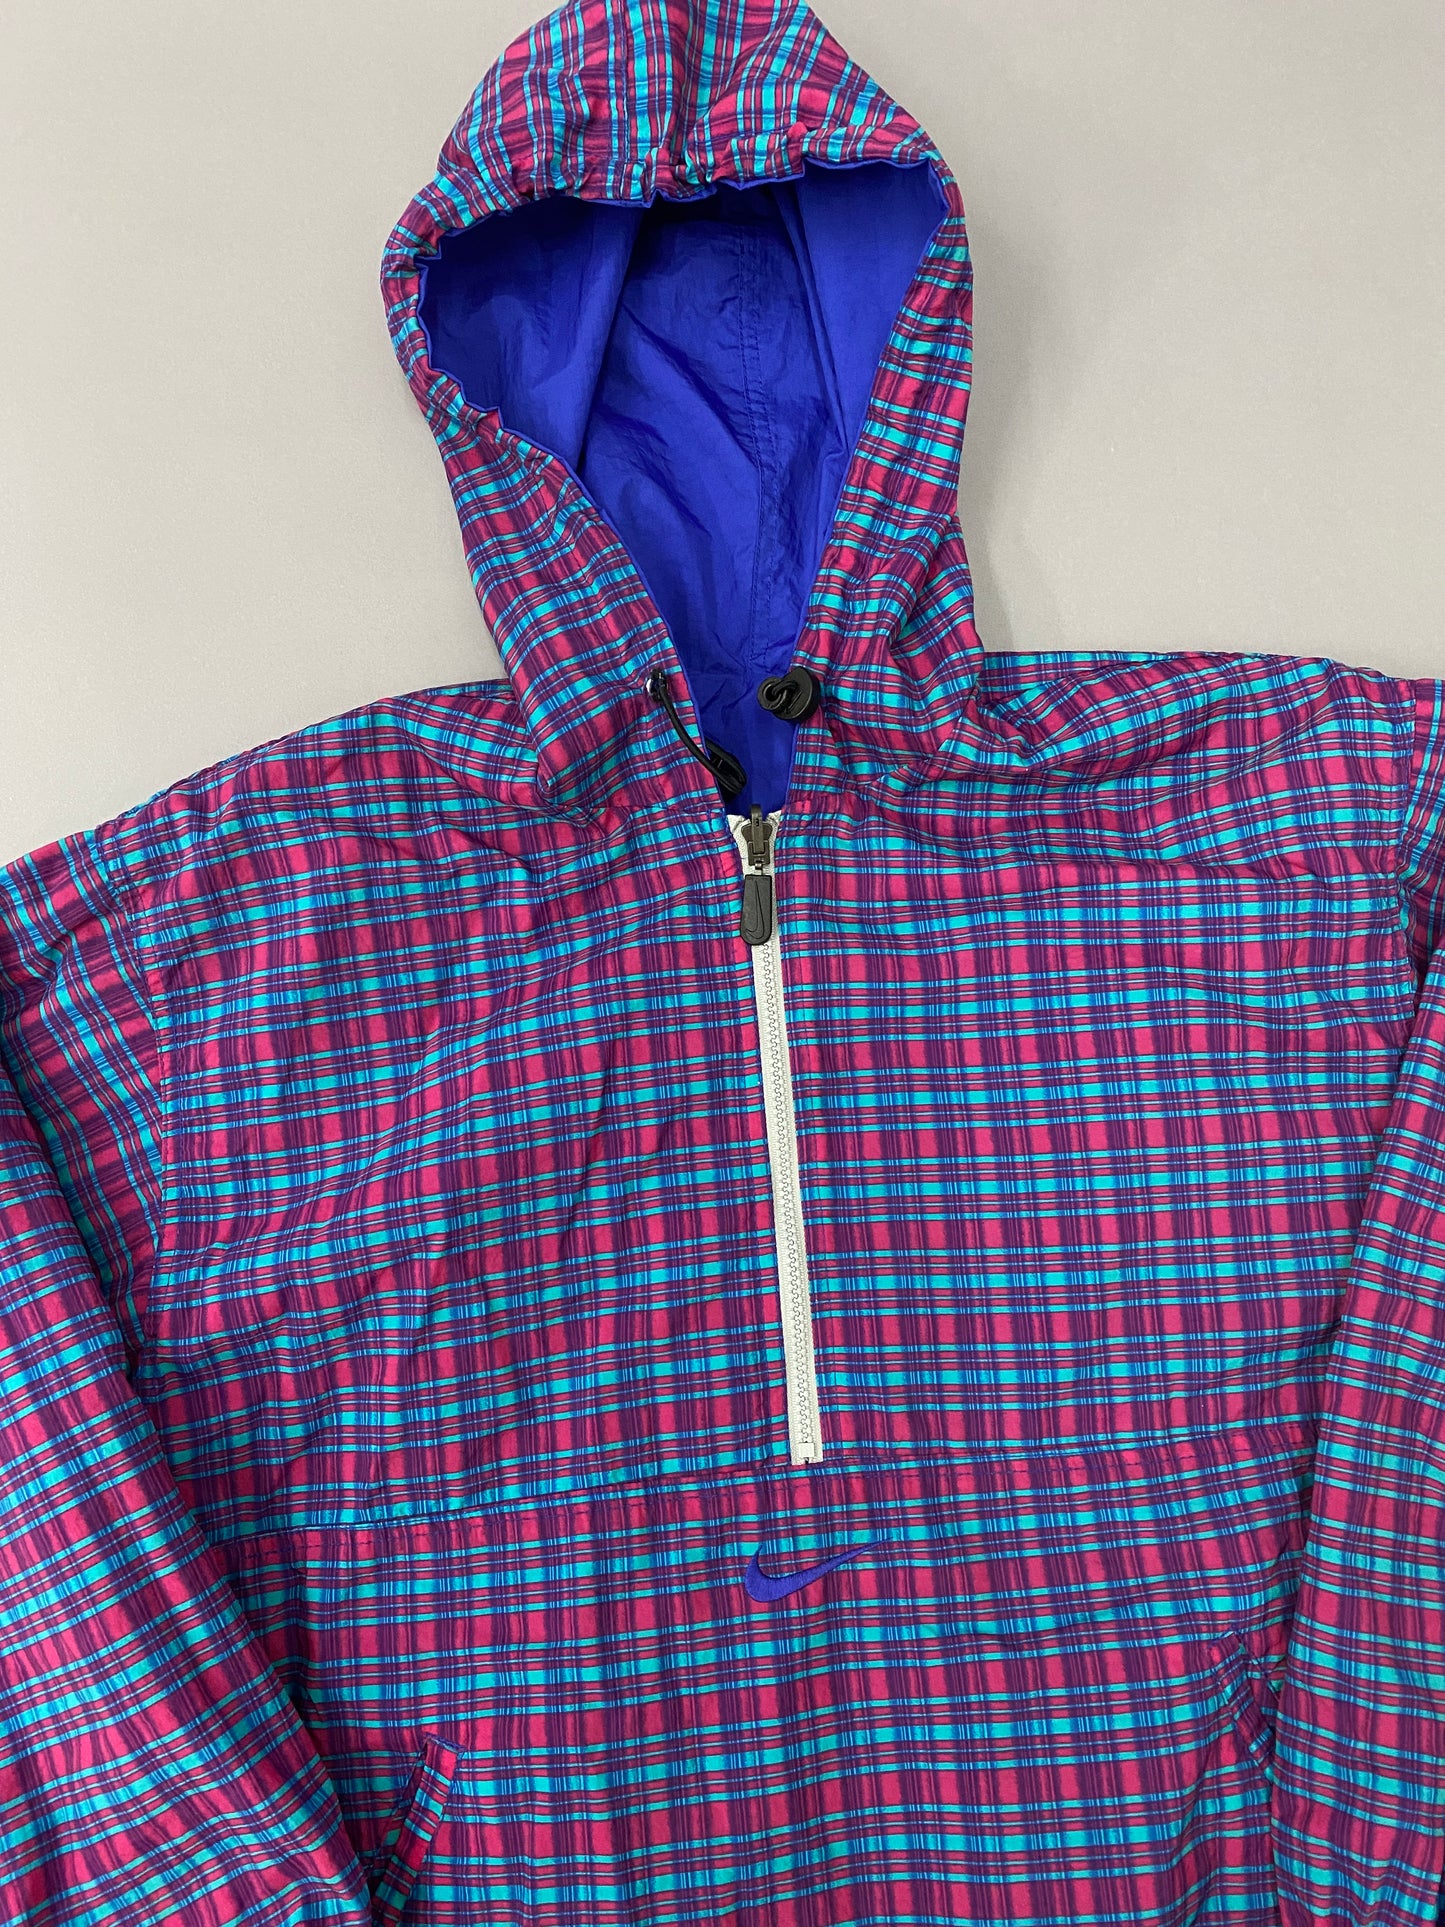 Nike 90's Sweatshirt (Double View)